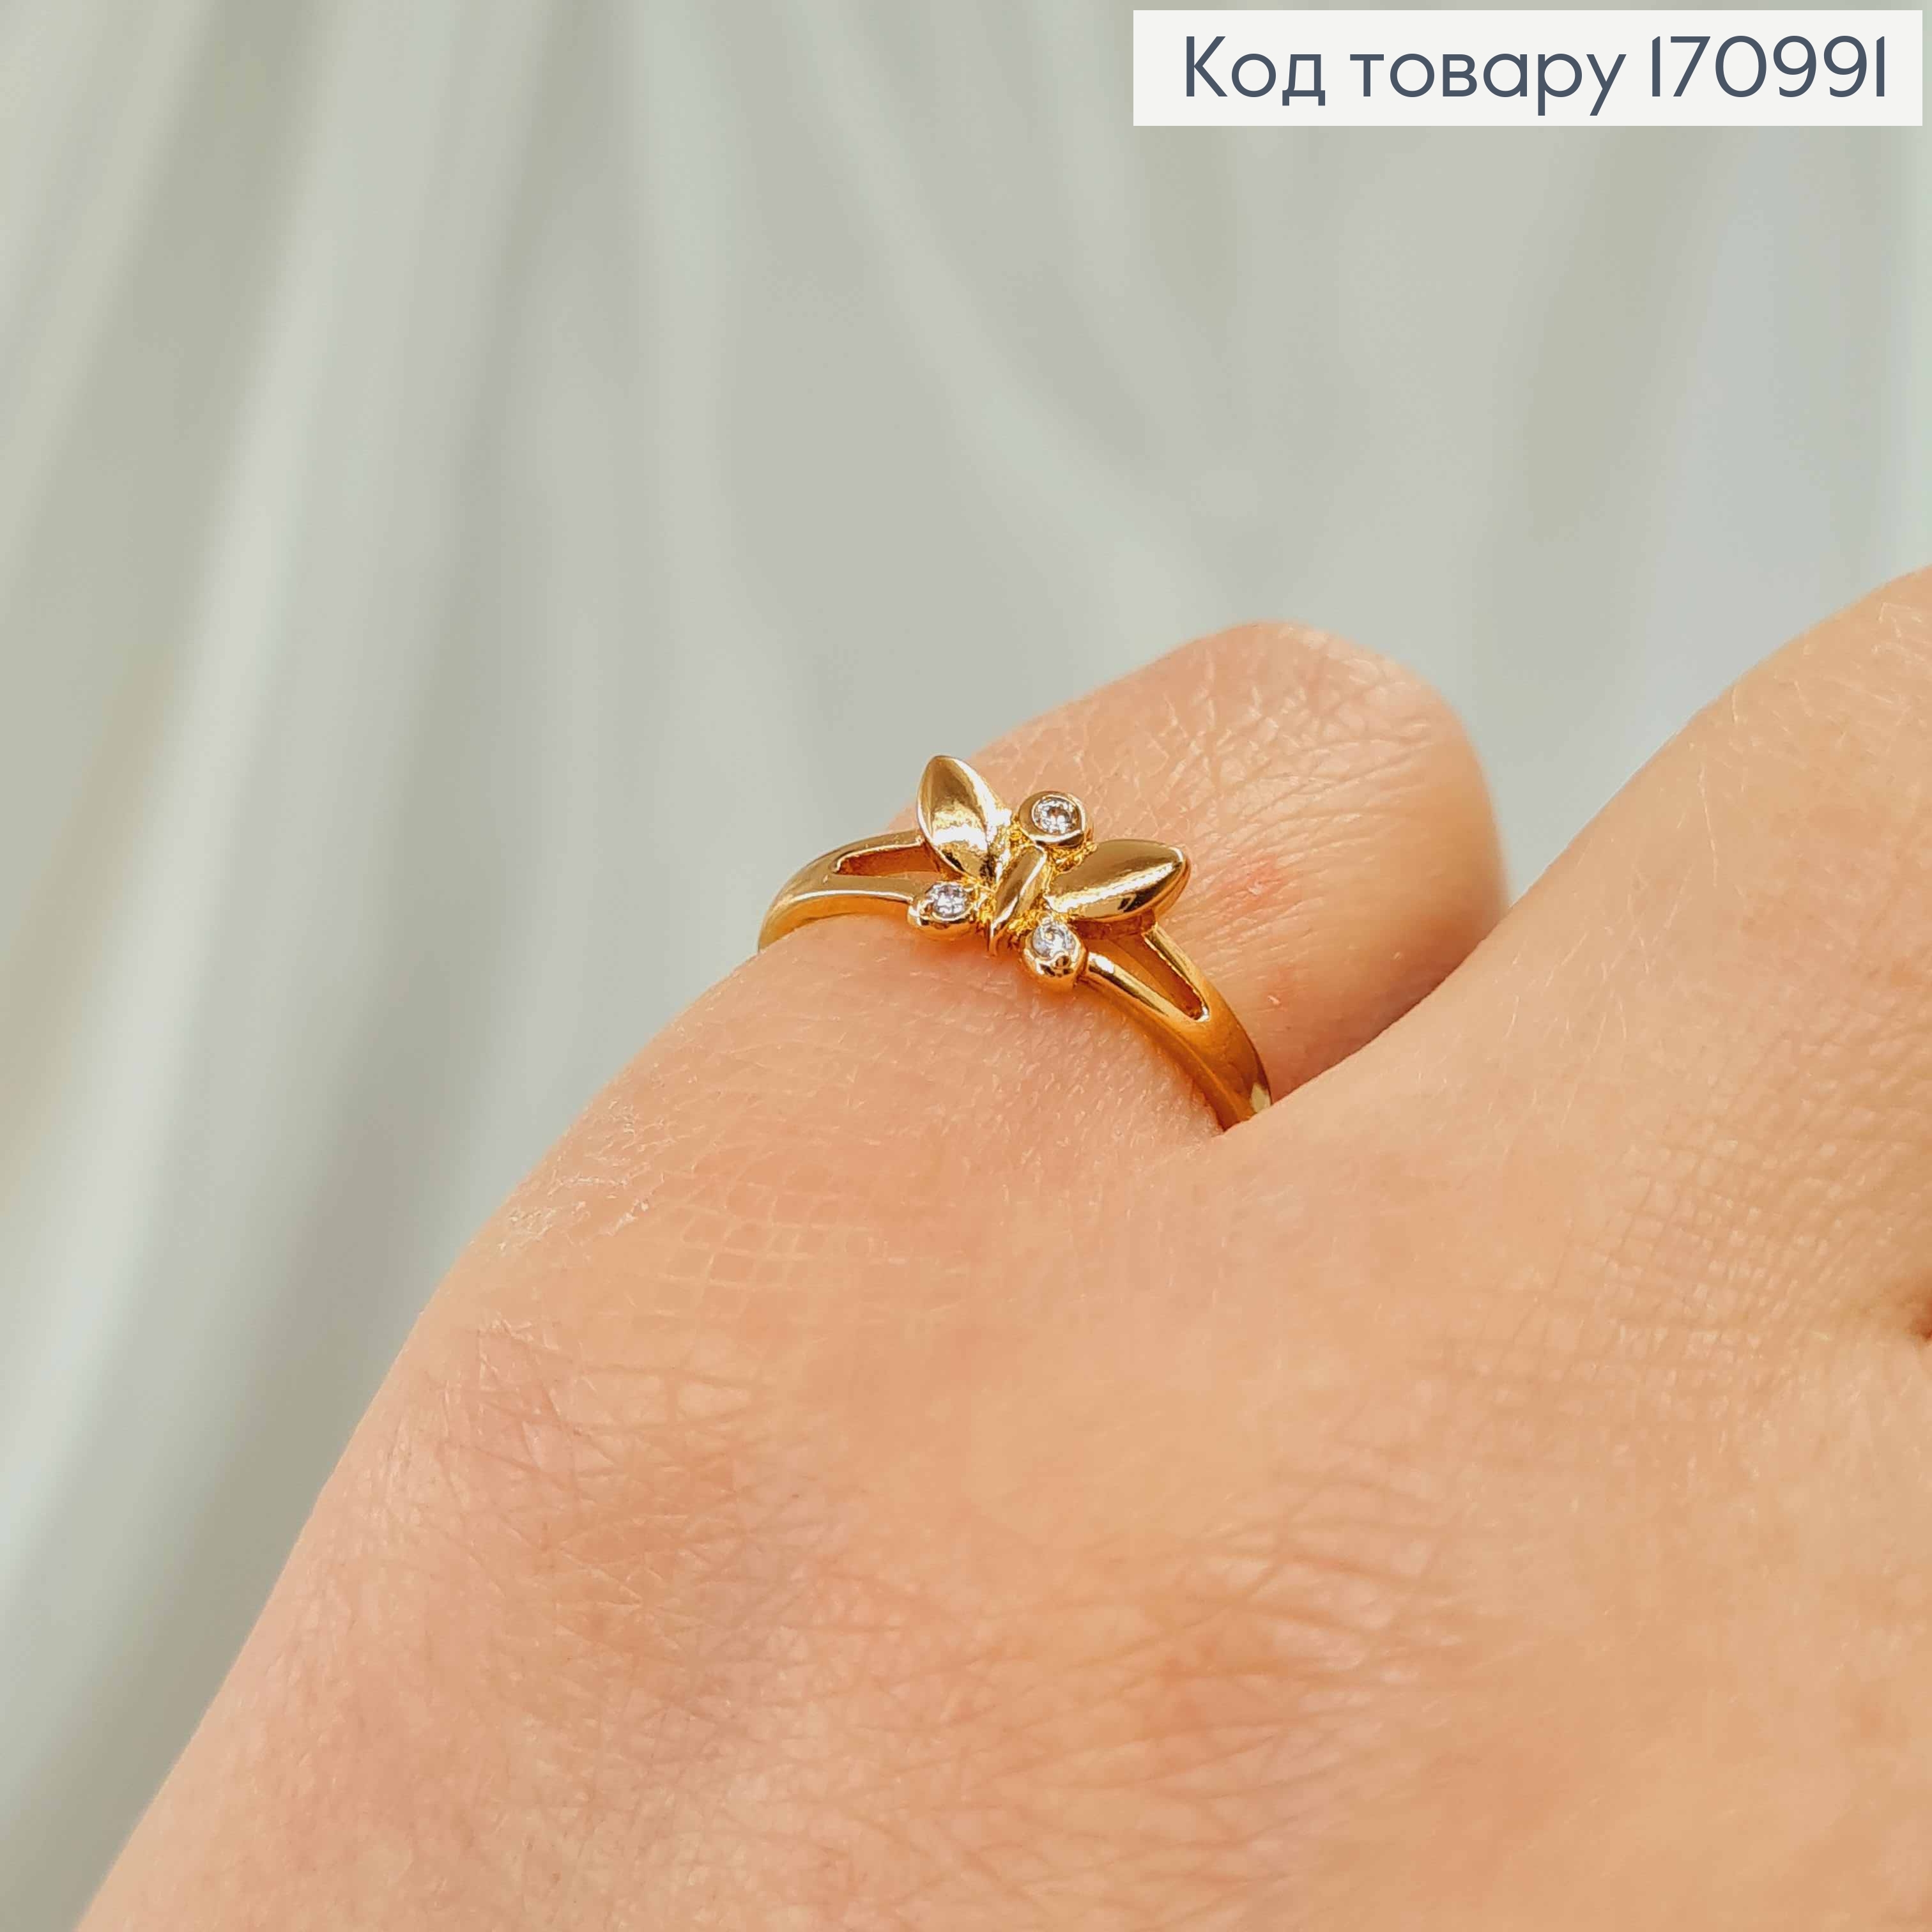 Кольцо "Бабочка" с камнями, Xuping 18К 170991 фото 2